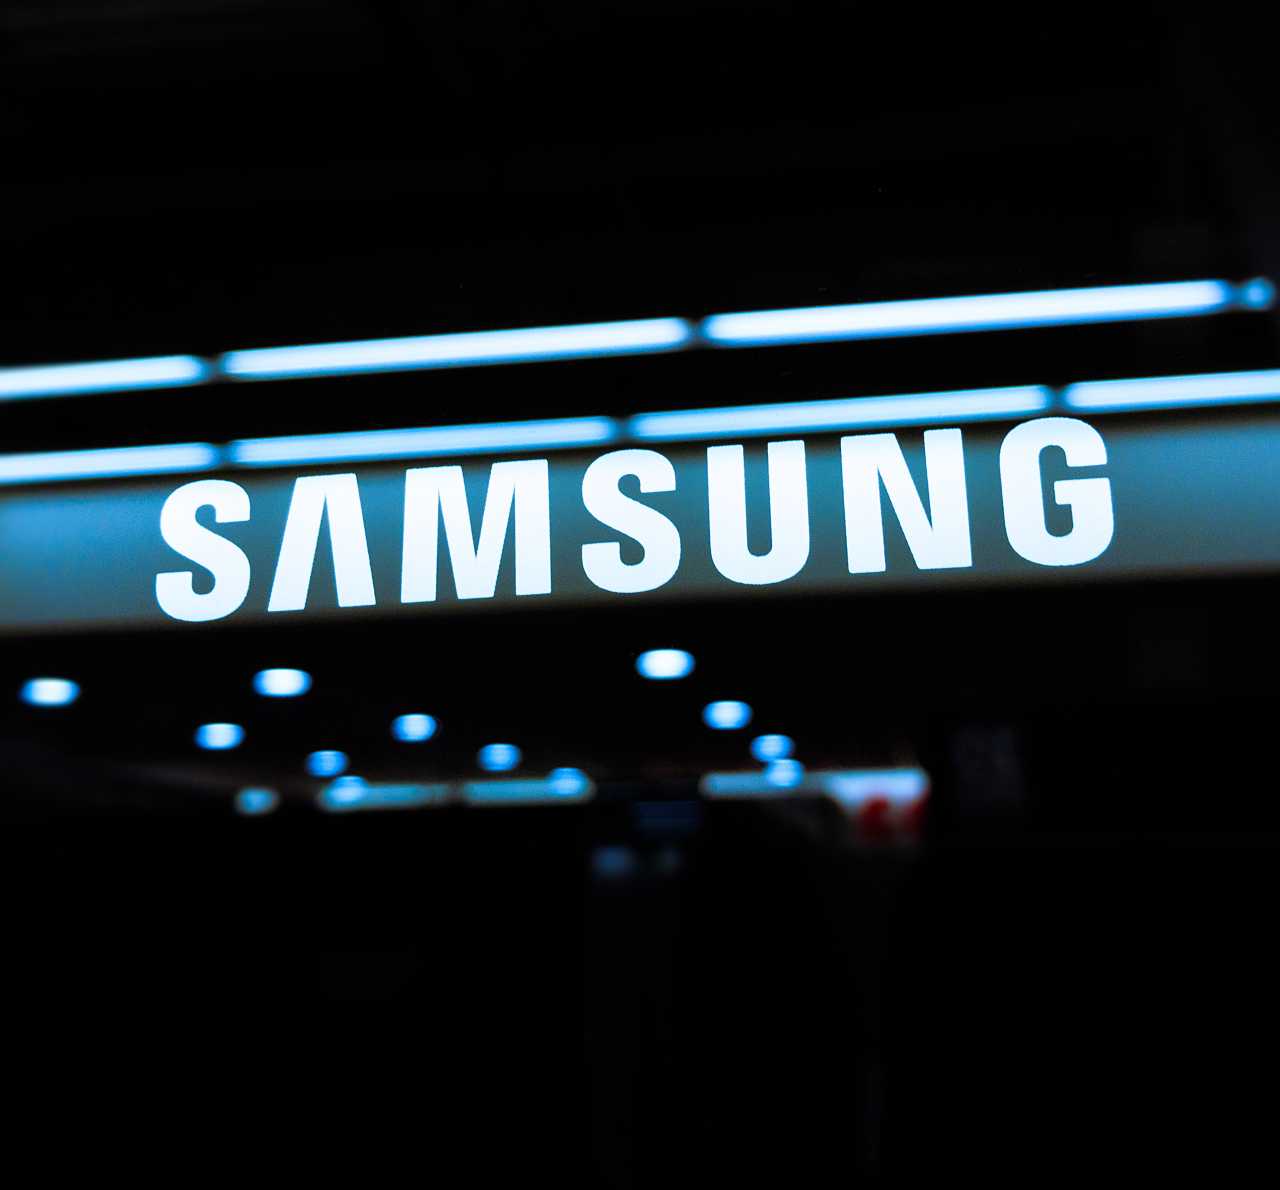 Samsung 20220330 tech